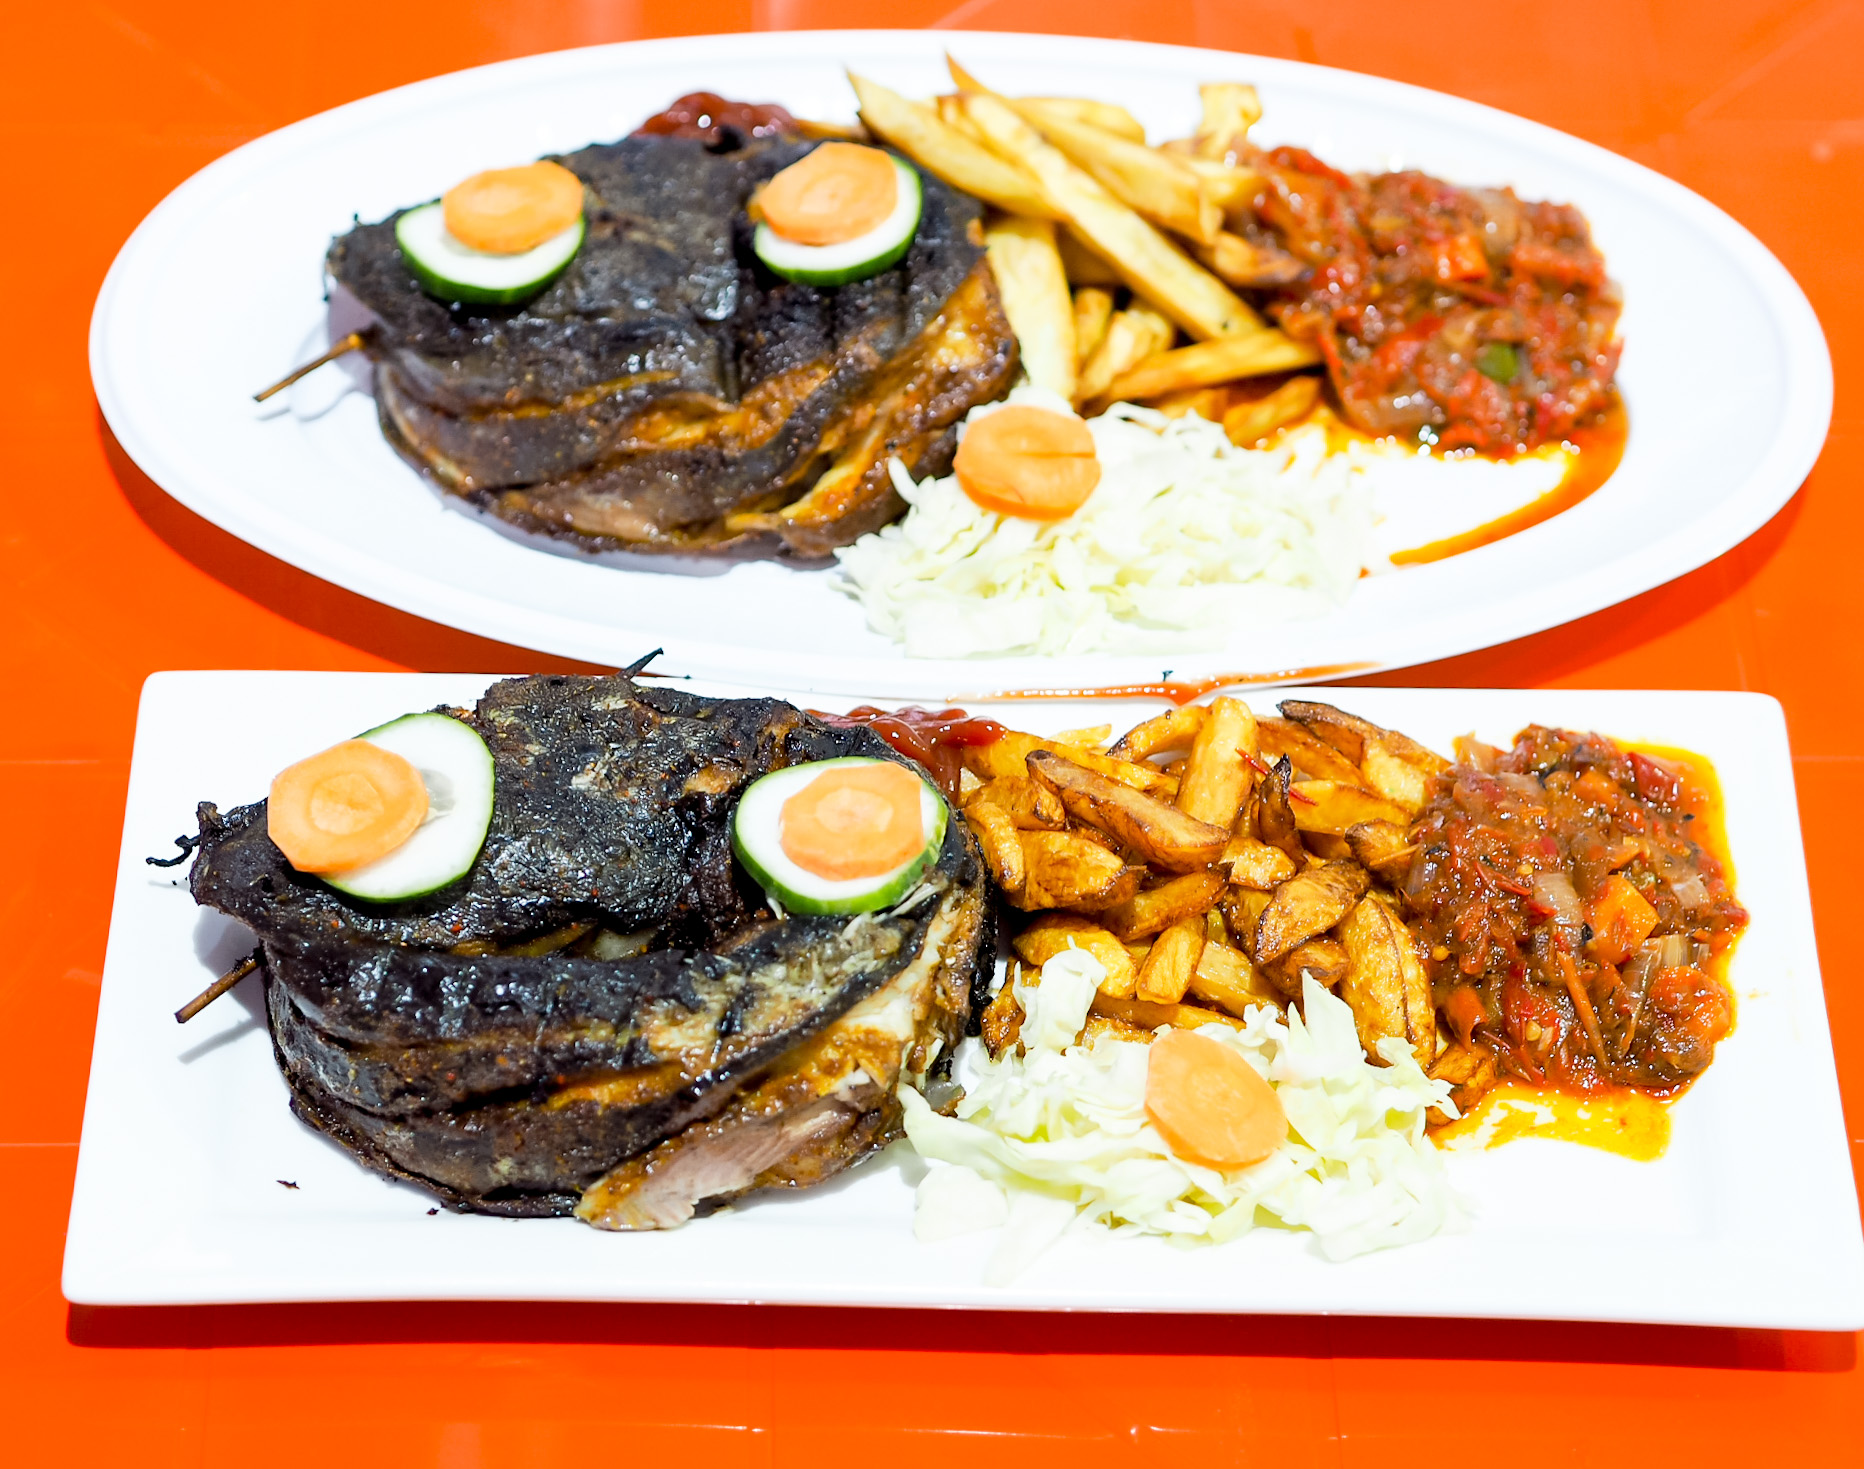 Catfish menu at the Grill Abuja 